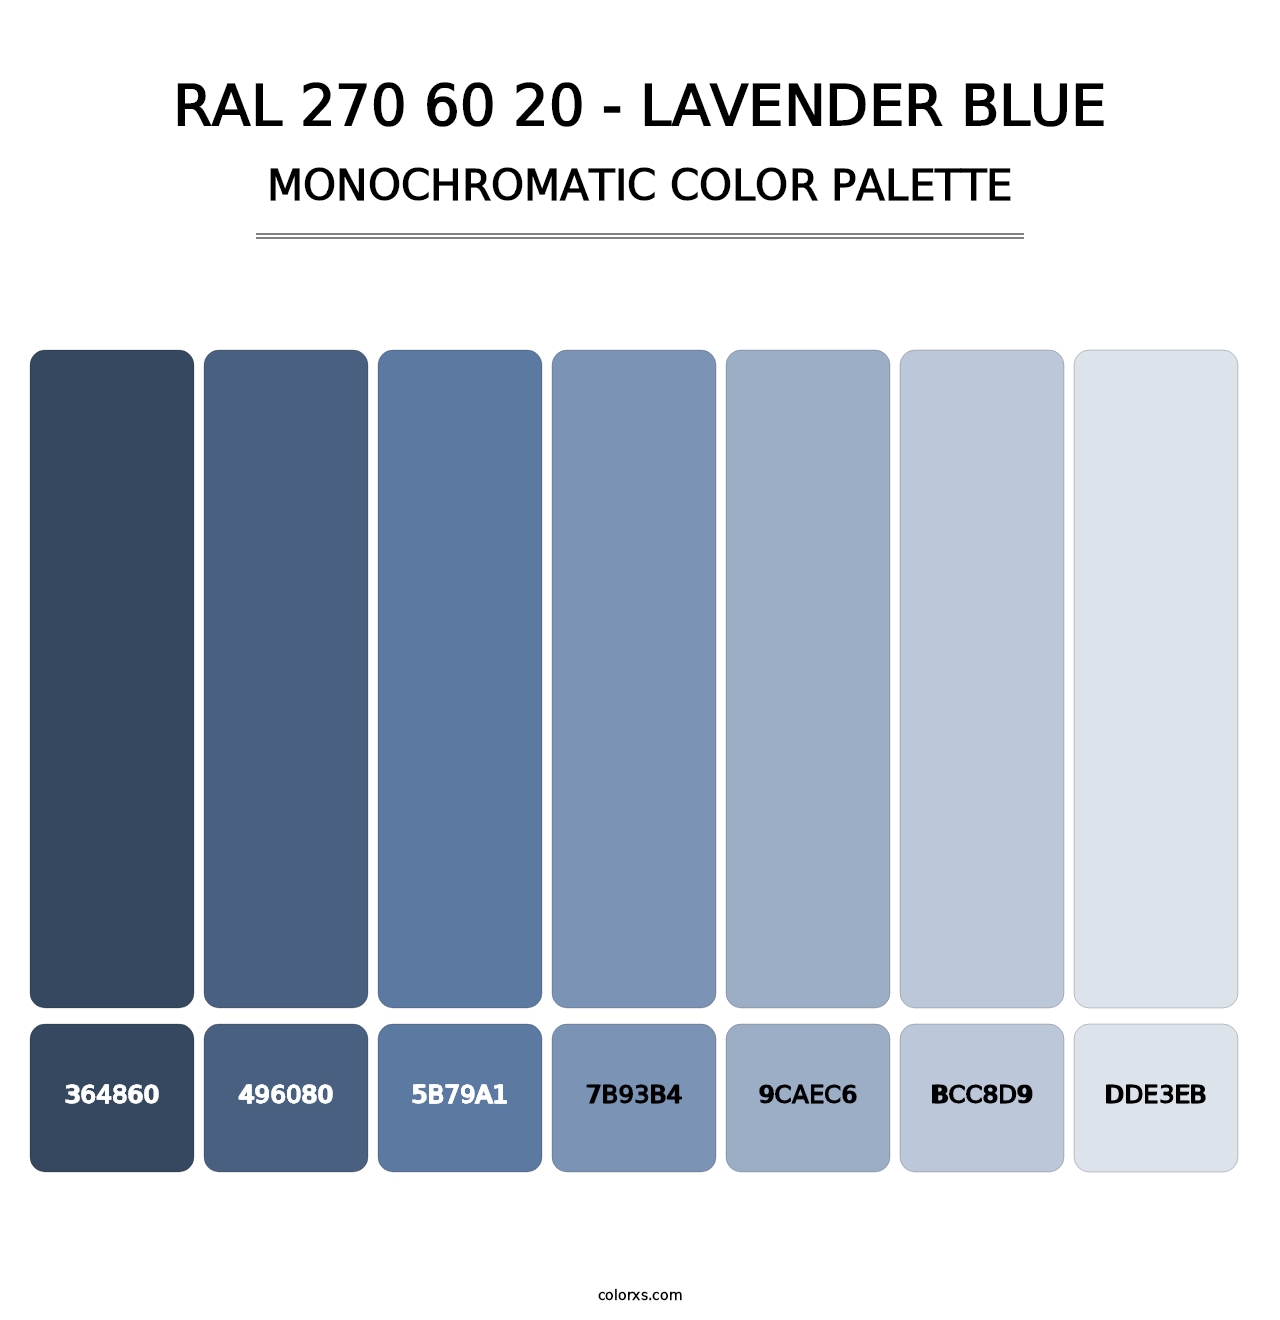 RAL 270 60 20 - Lavender Blue - Monochromatic Color Palette